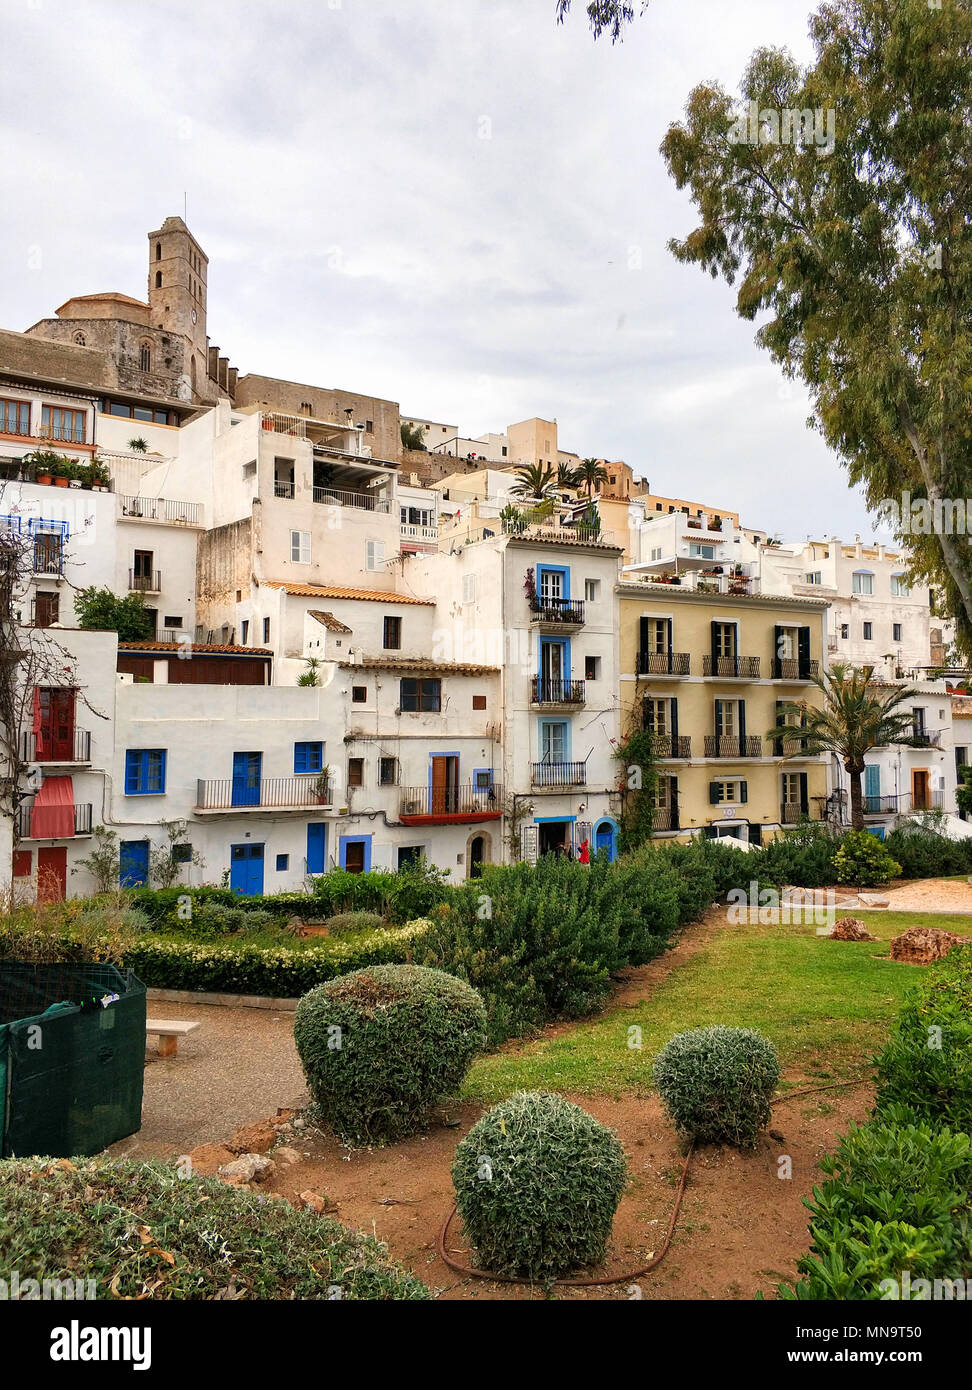 La città vecchia di Ibiza (Ibiza). Vista del famoso castello di Dalt Vila e le sue case dipinte di bianco. Isole Baleari. Spagna Foto Stock